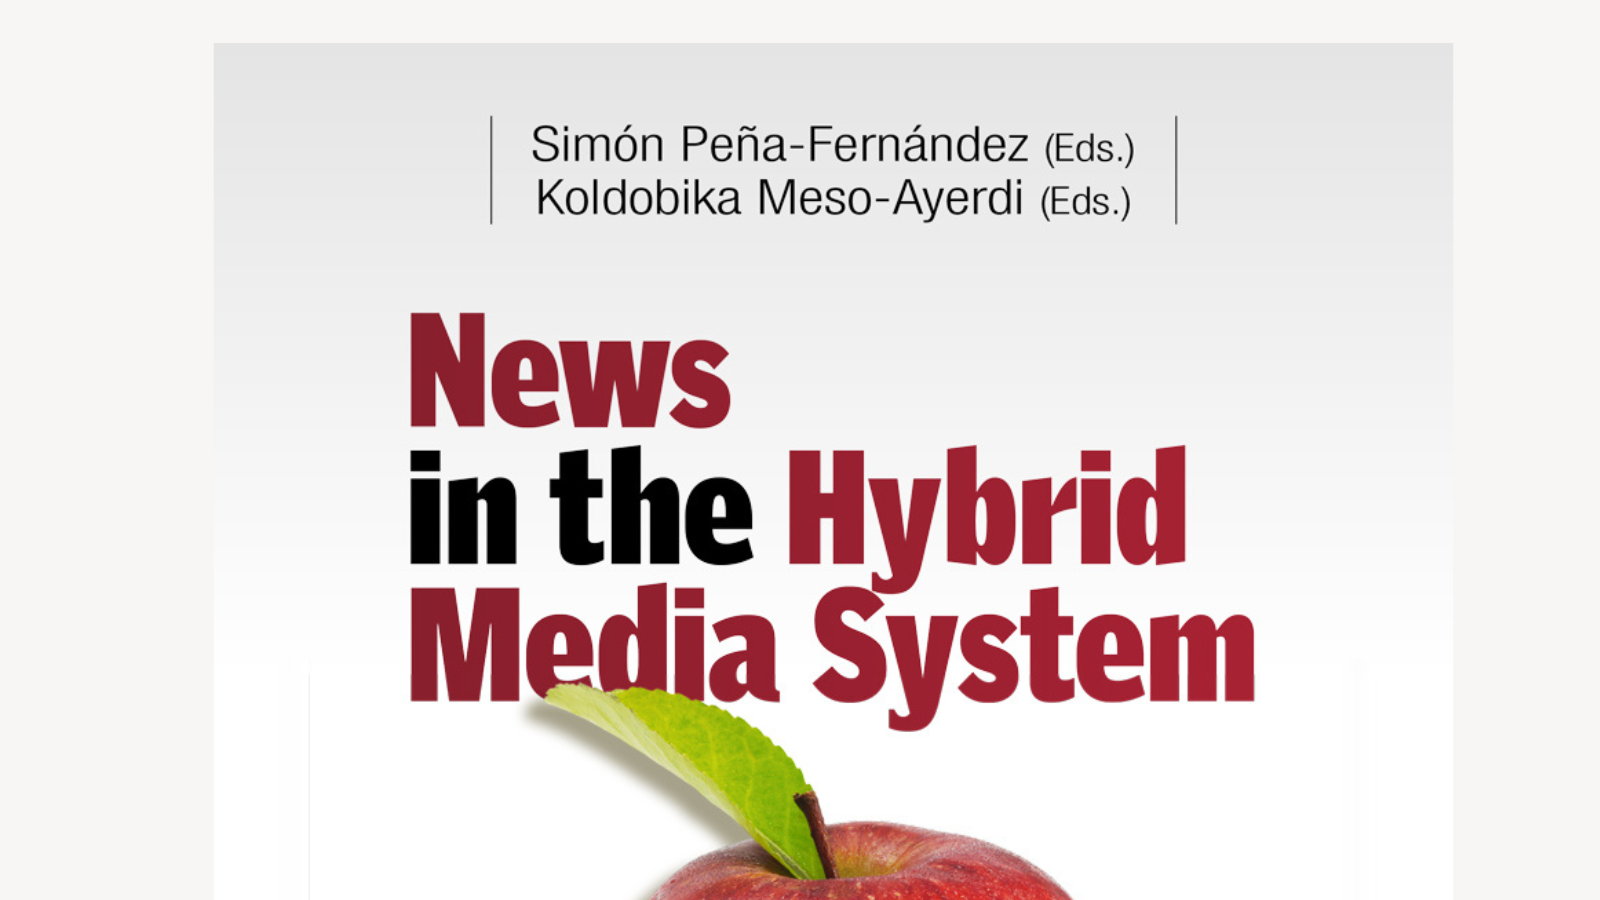 Los medios buscan nuevas formas de financiación en el sistema híbrido de medios